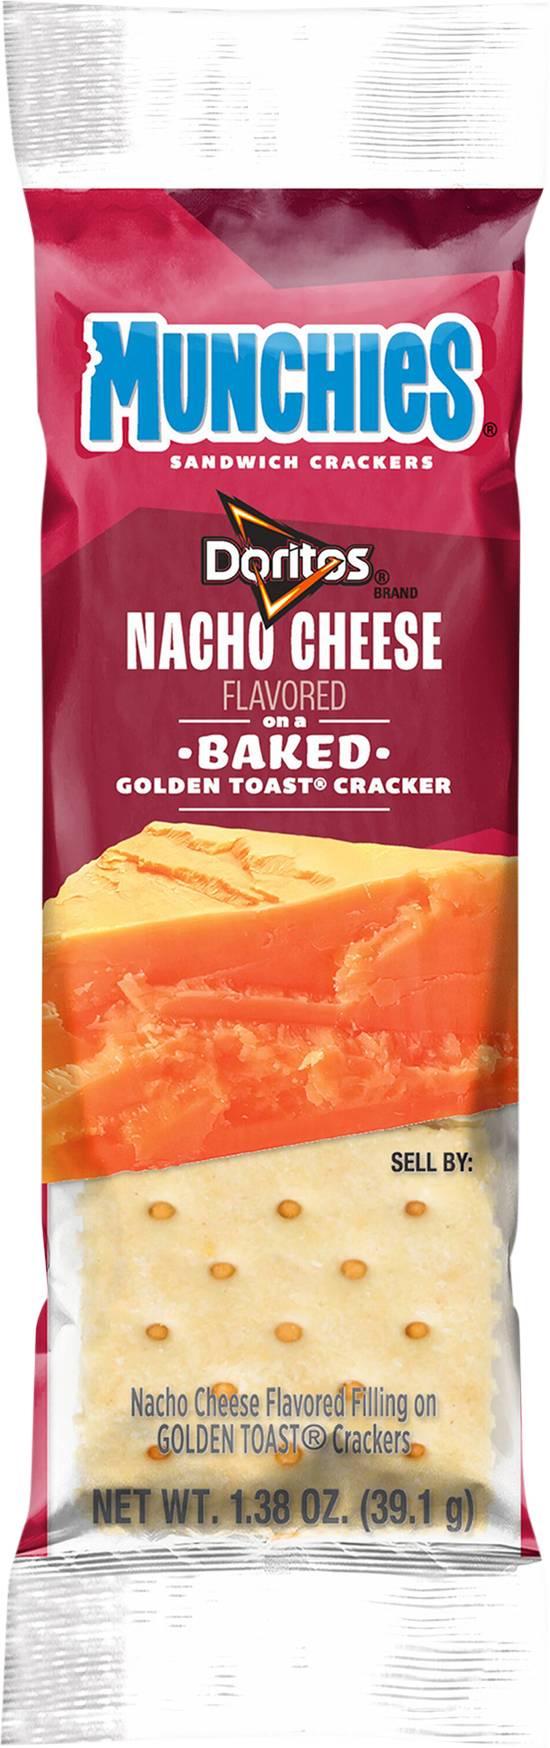 Munchies Doritos Sandwich Crackers(Nacho Cheese)